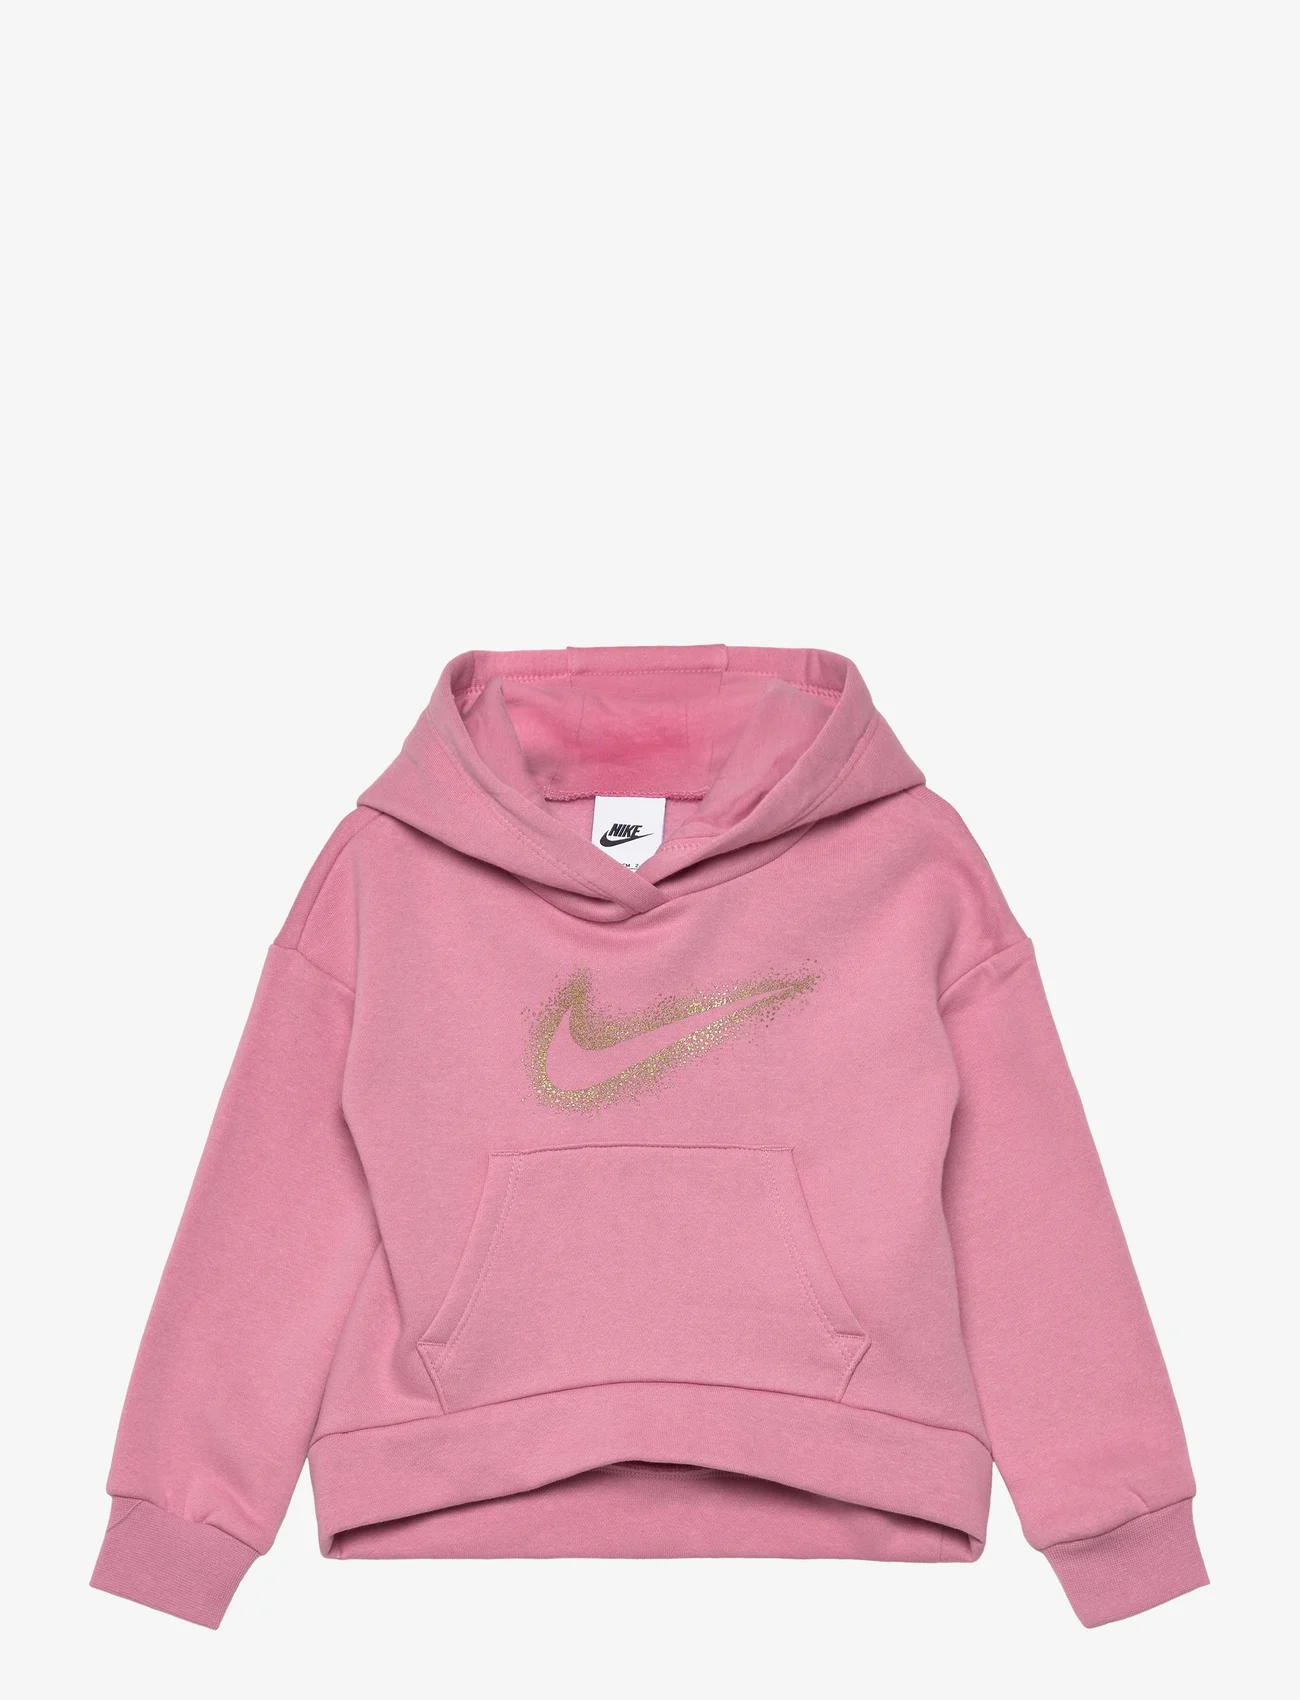 Nike - FLEECE HOODIE - hettegensere - elemental pink - 0